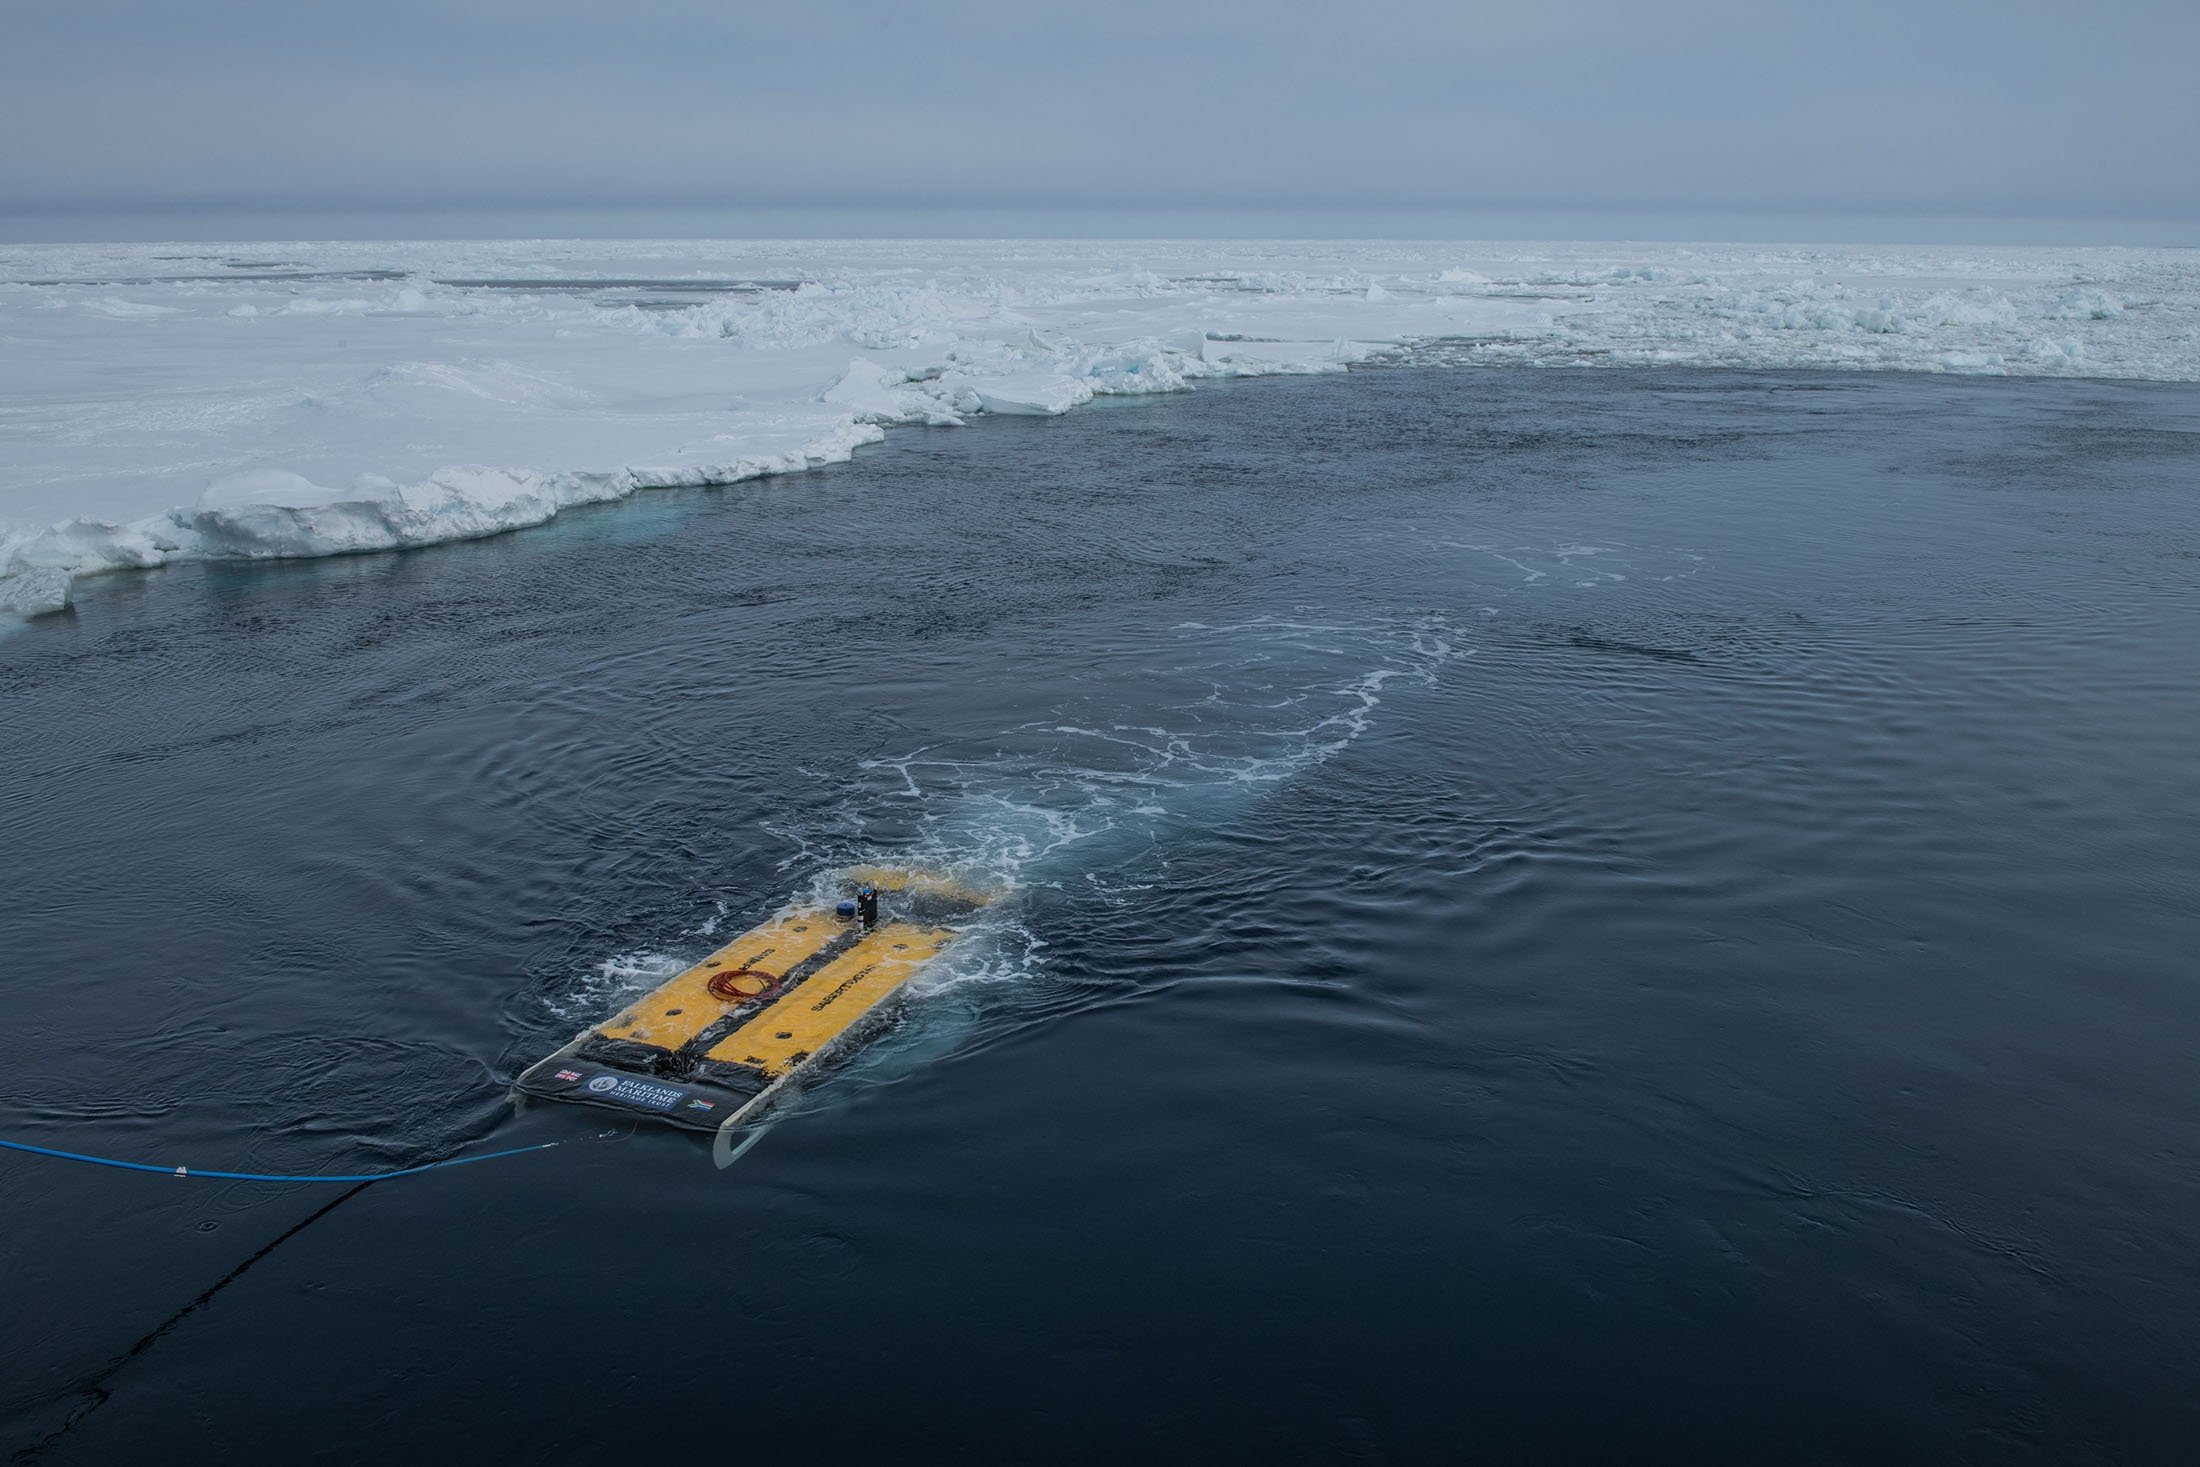 Pemulihan AUV ekspedisi Endurance22 setelah menyelam di Laut Weddell untuk mencari kapal Sir Ernest Shackleton, Endurance, di Antartika, 23 Februari 2022. (Falklands Maritime Heritage Trust via AFP)